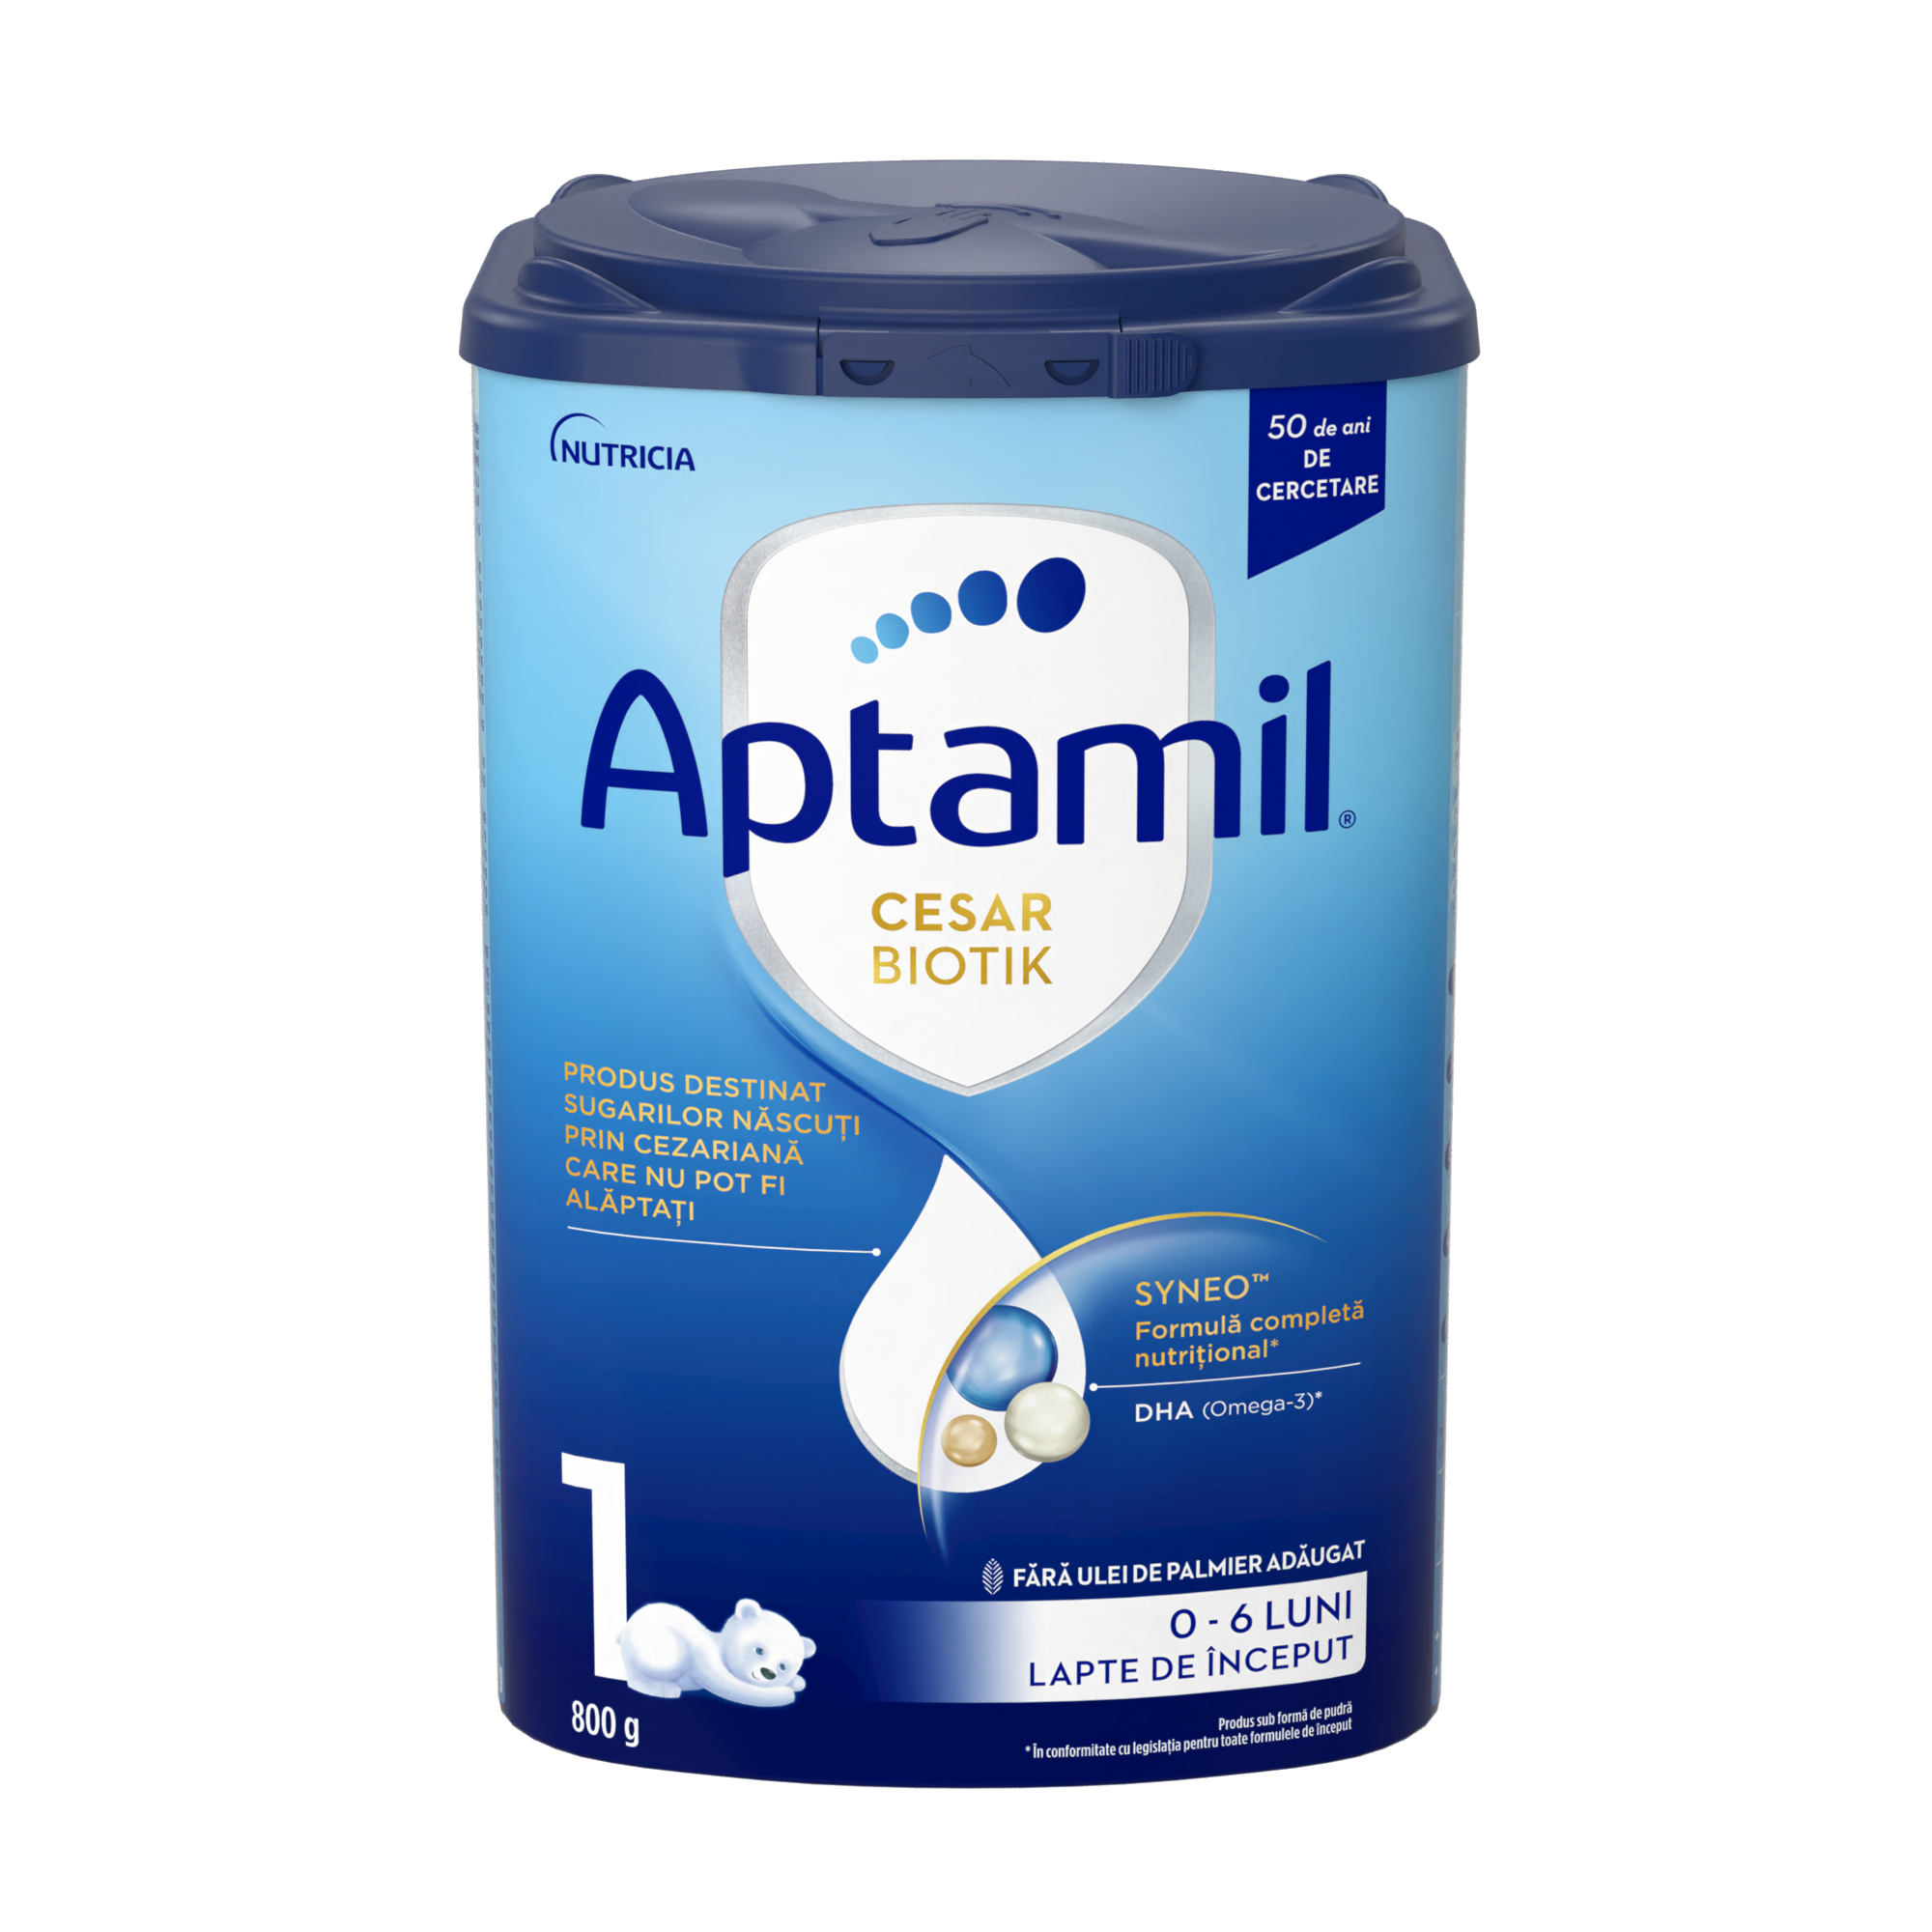 Aptamil Cesar Biotik 1 800g formula de lapte praf pentru copii nascuti prin cezariana